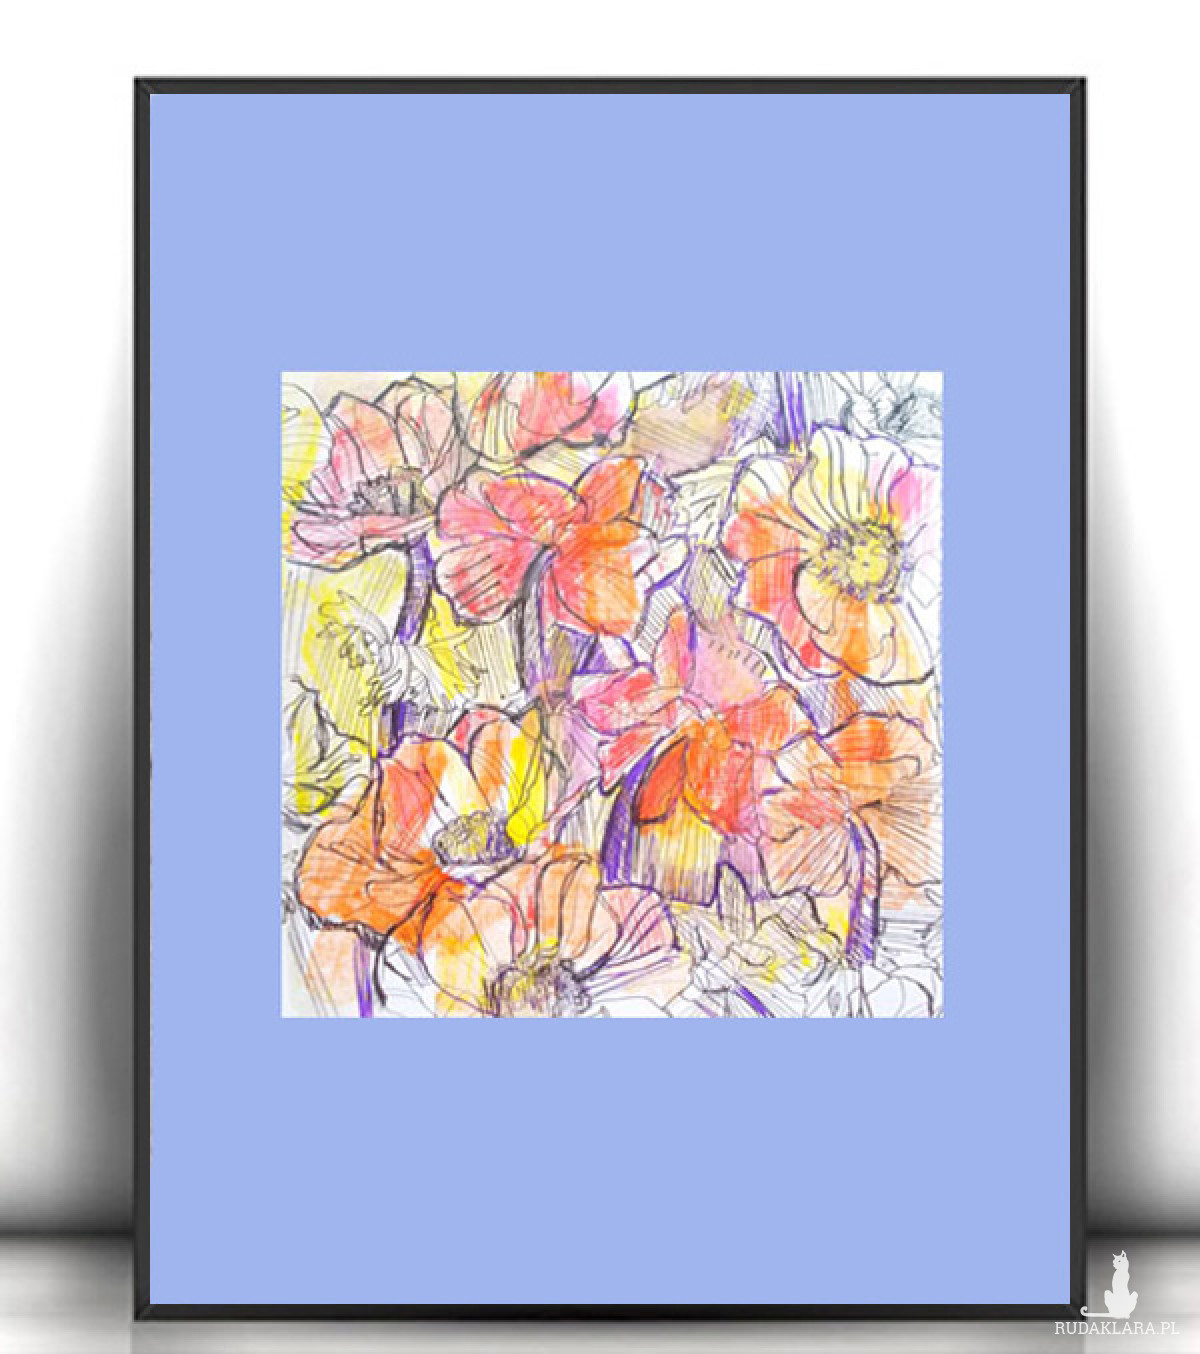 łąka obrazek A4, kolorowa dekoracja na na ścianę, mały rysunek z kwiatkami, kwiaty grafika do domu